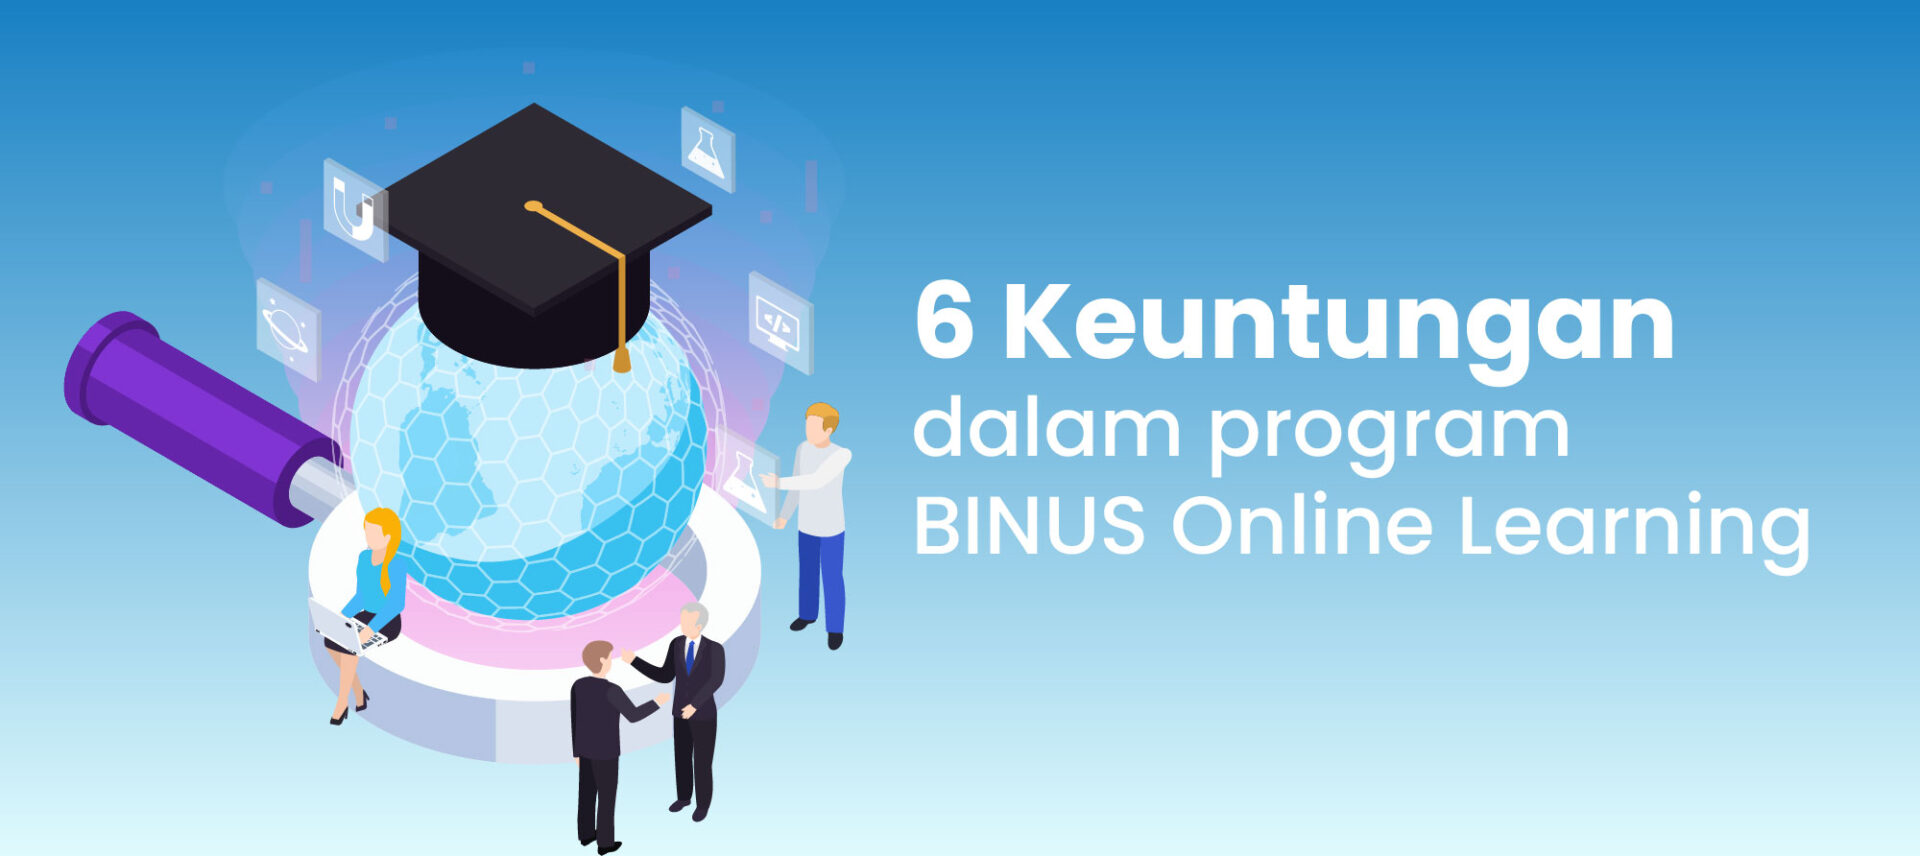 Binus online learning